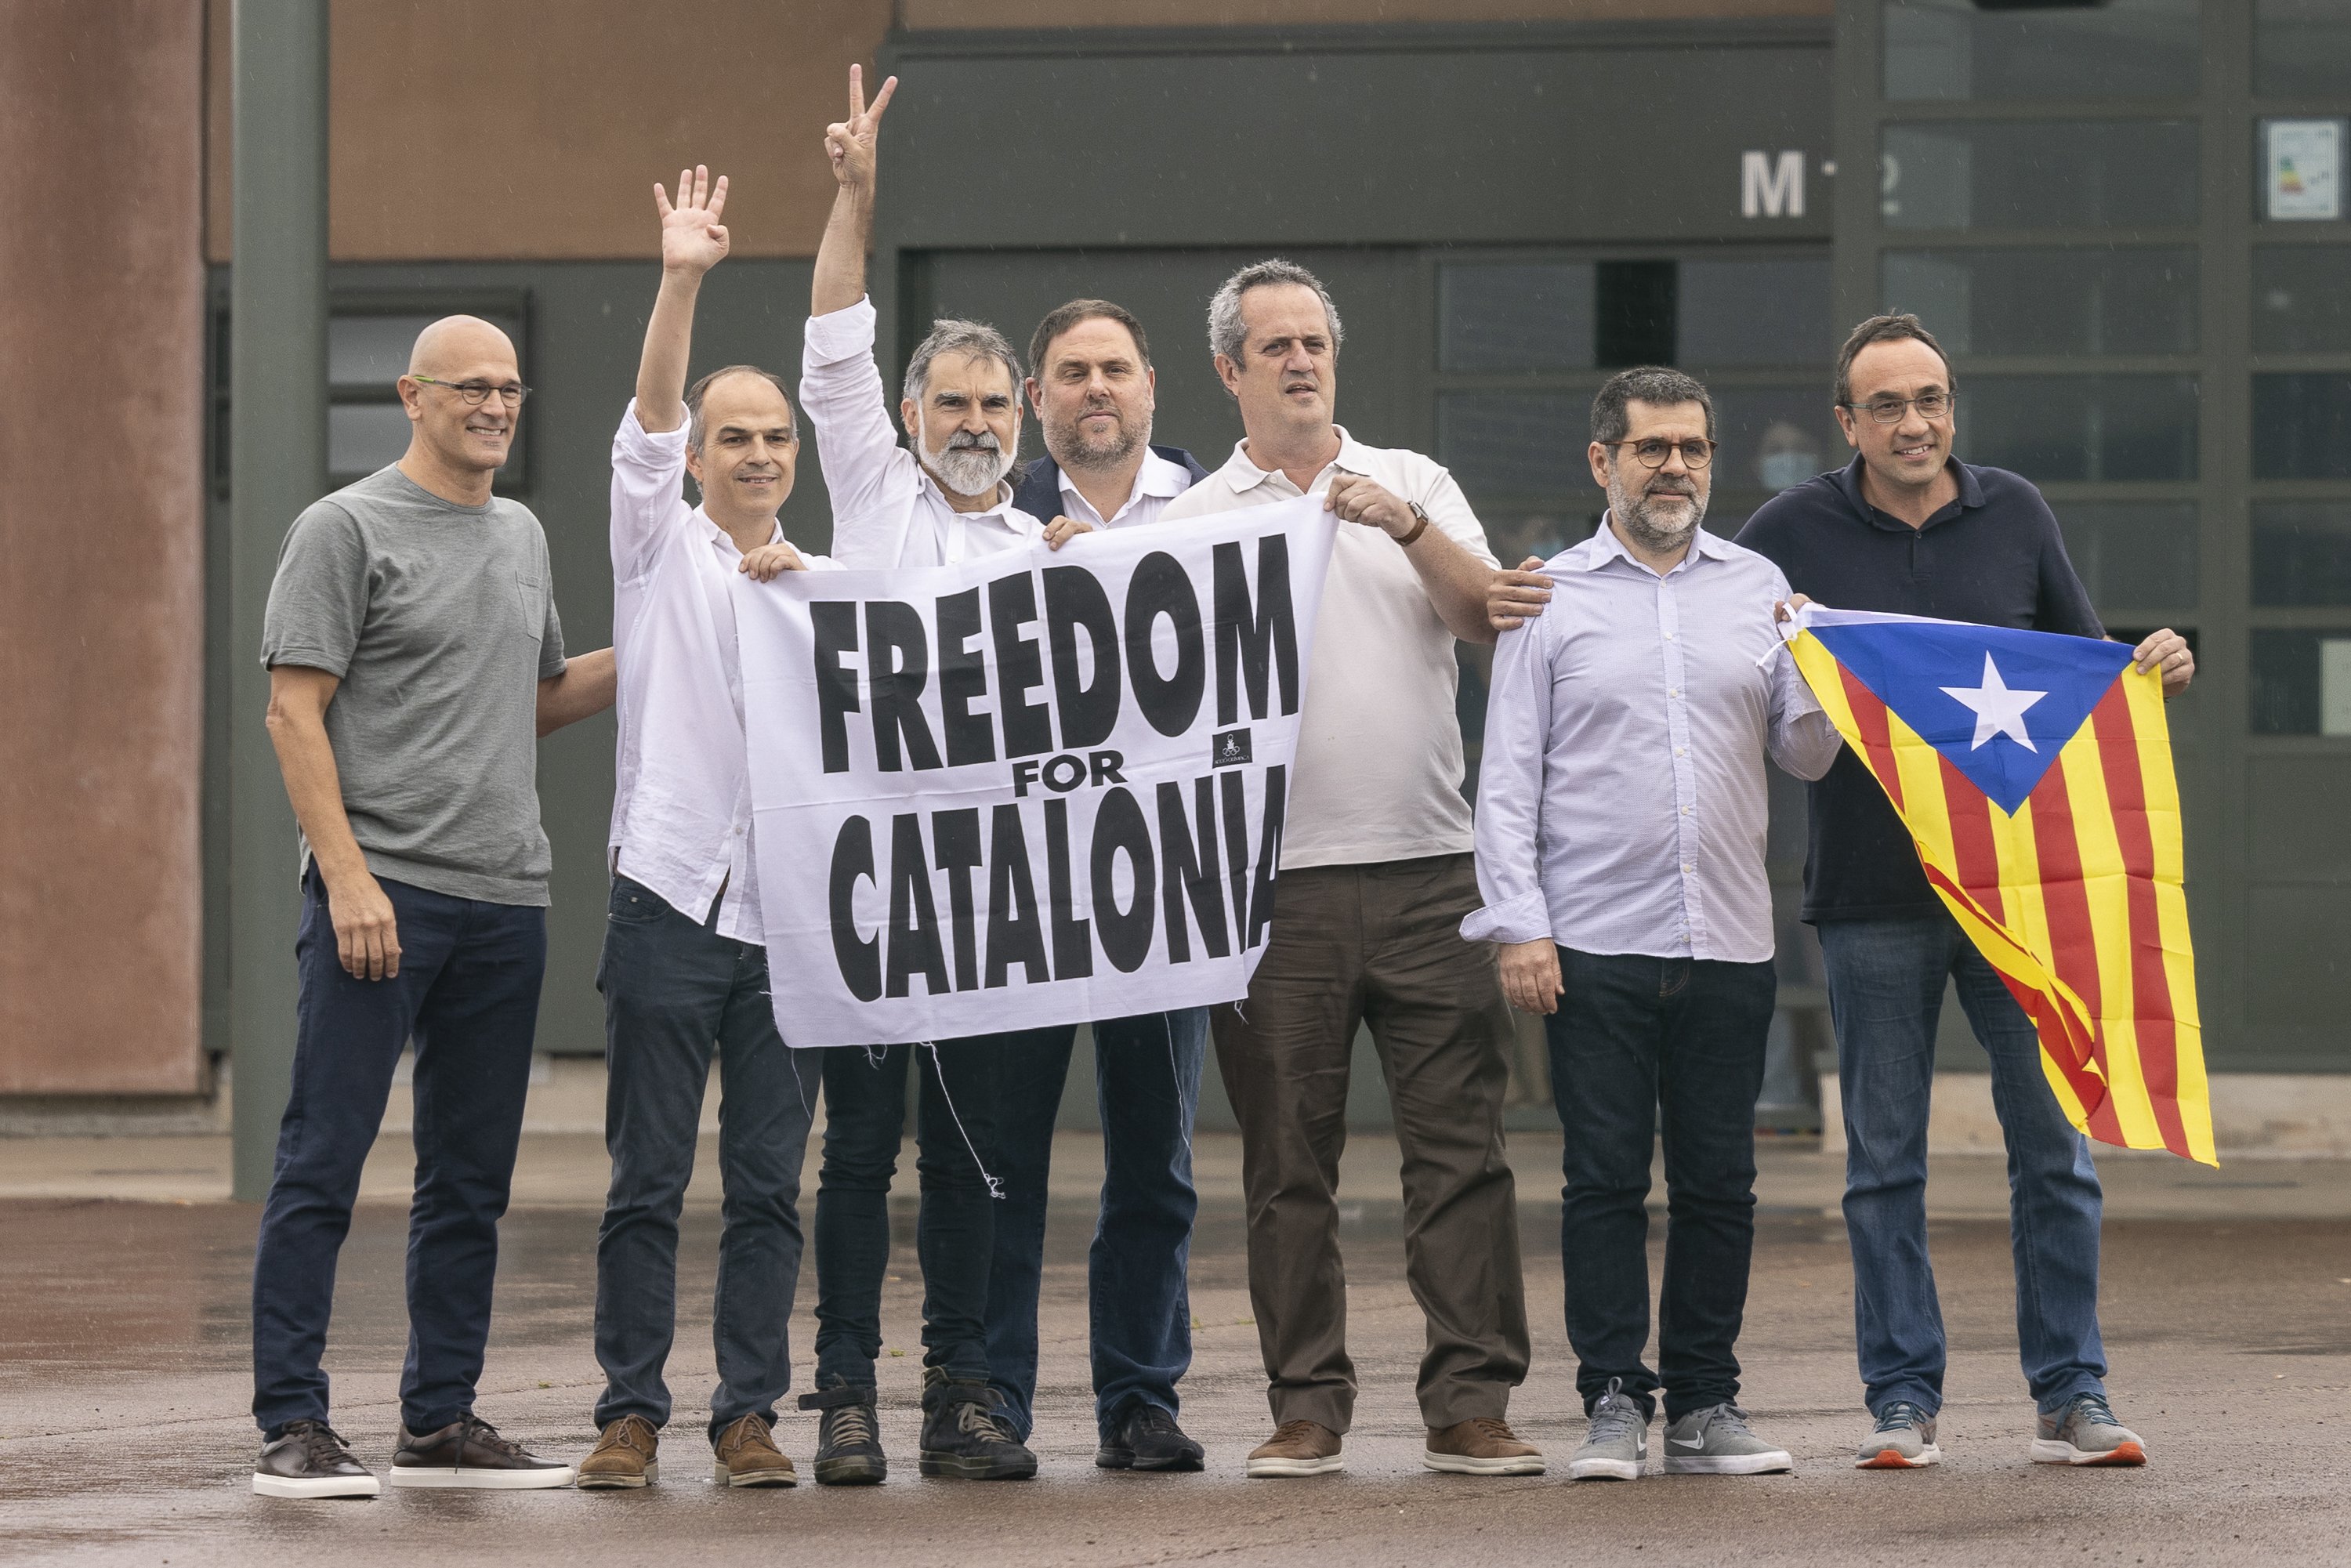 Los presos políticos plantan cara con "convicción" a la revisión de los indultos